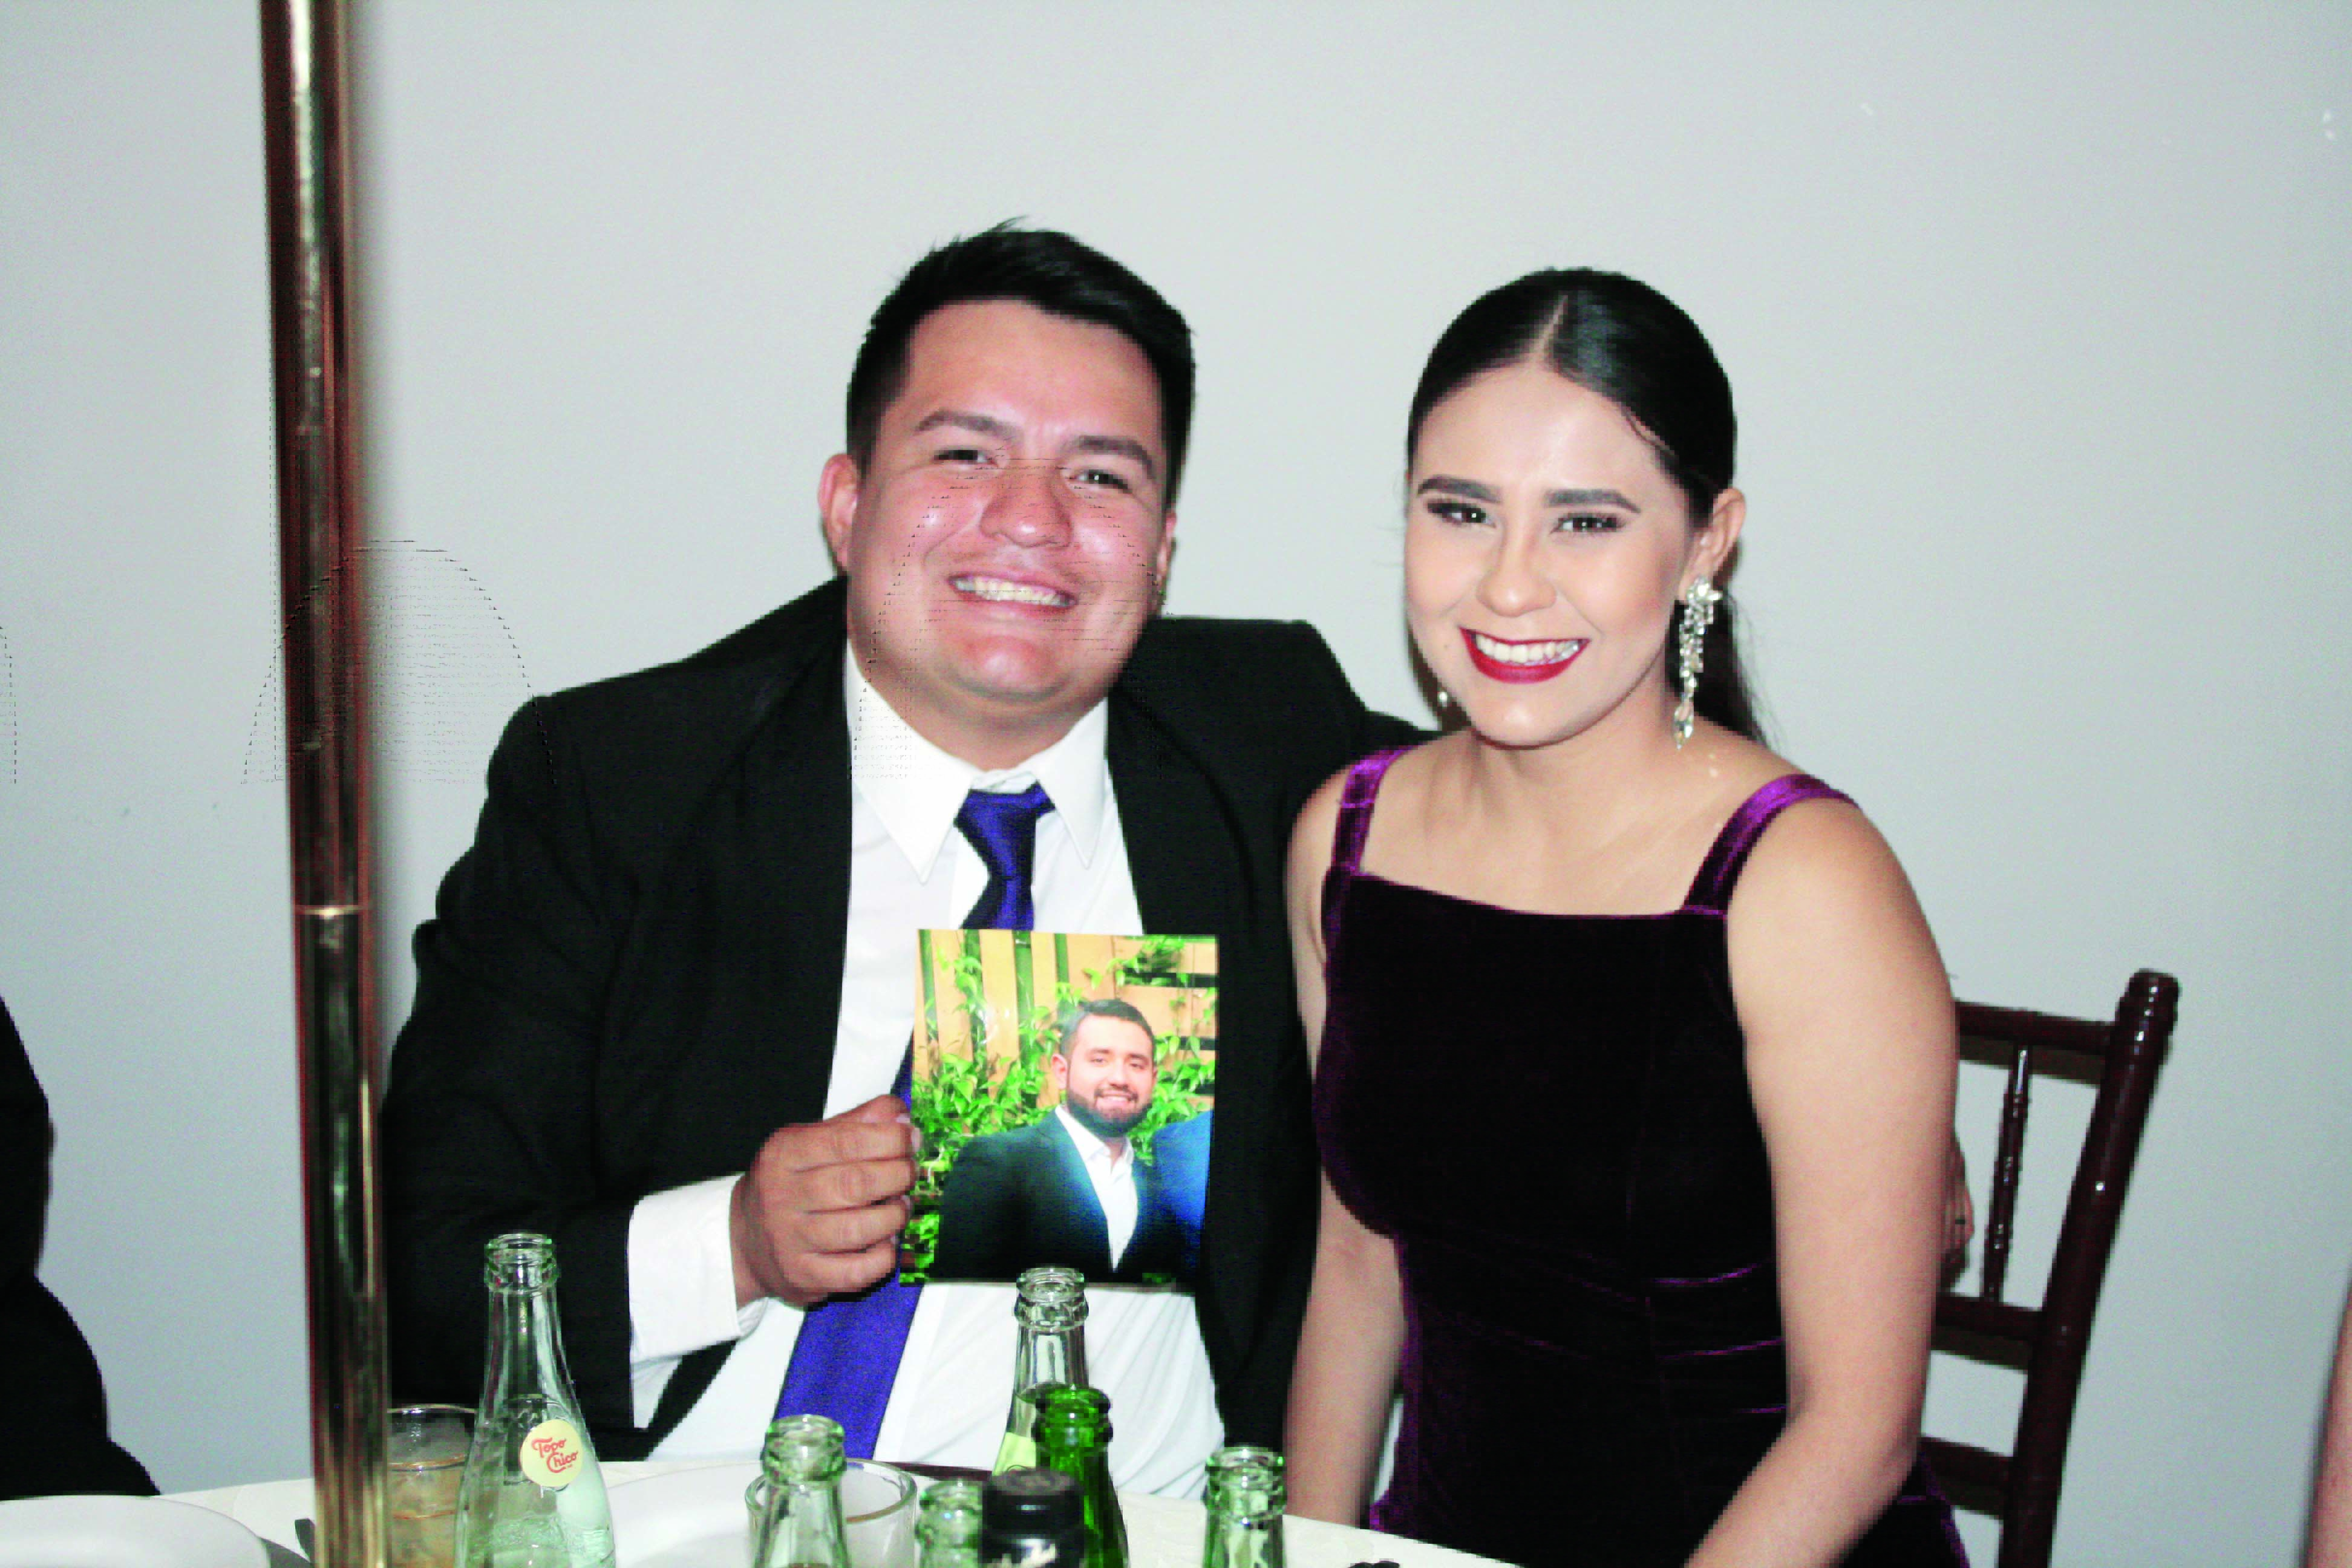 Tania & Reynaldo enlazan sus vidas en matrimonio